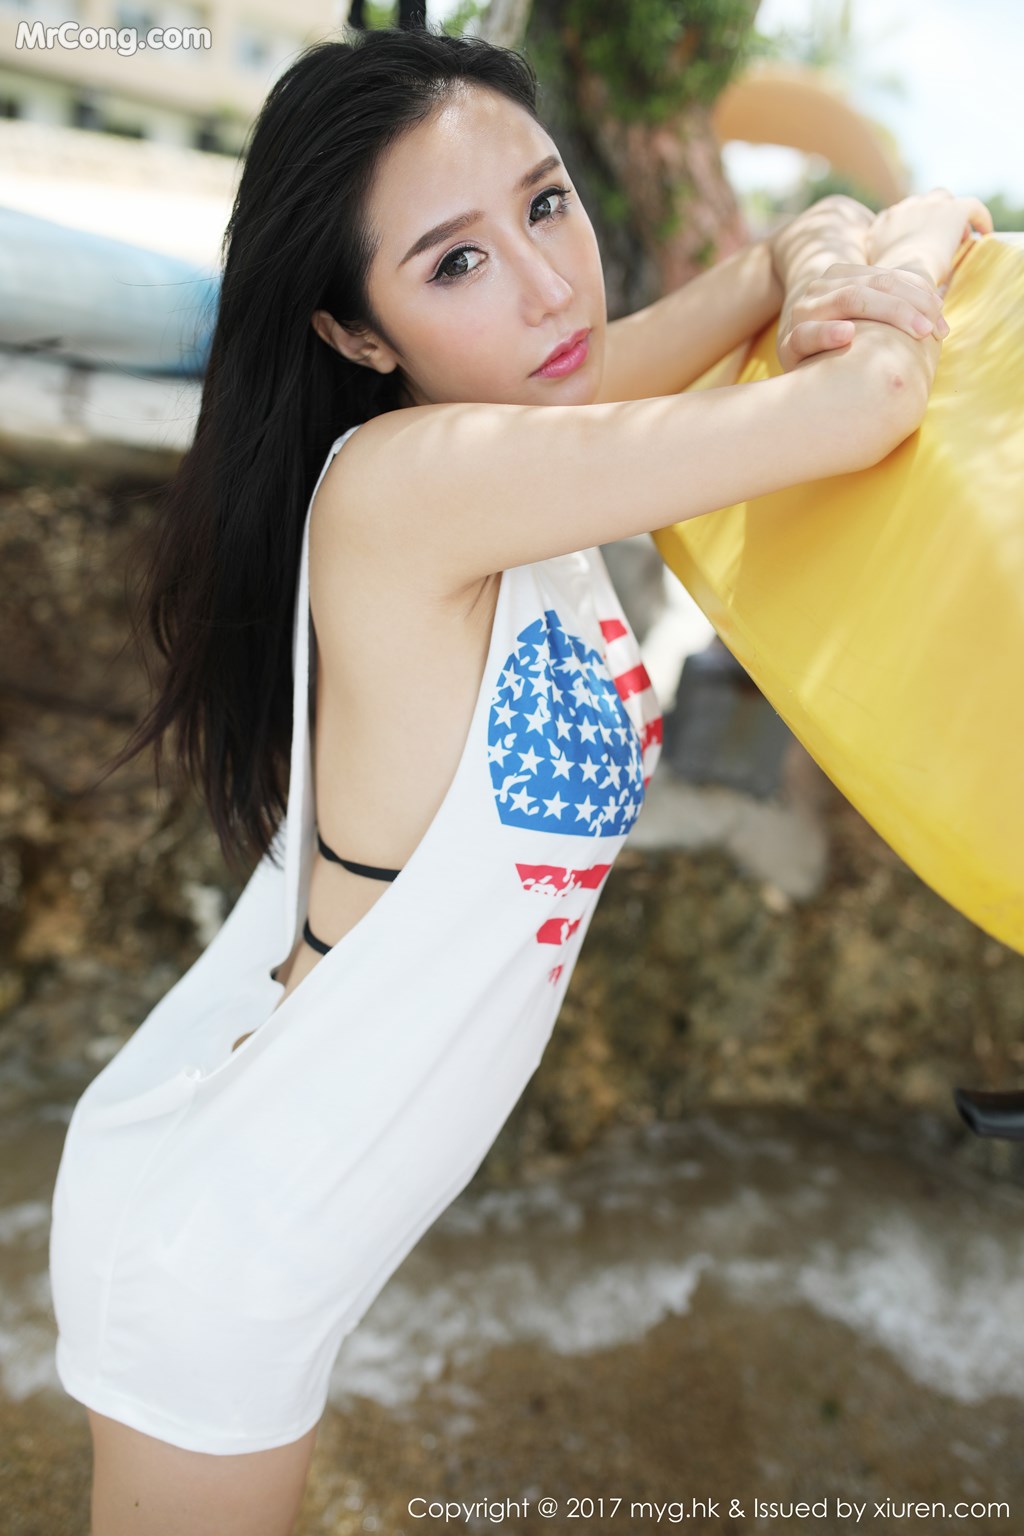 MyGirl Vol. 63: Model Yu Da Qiao (于 大 乔) (59 photos)